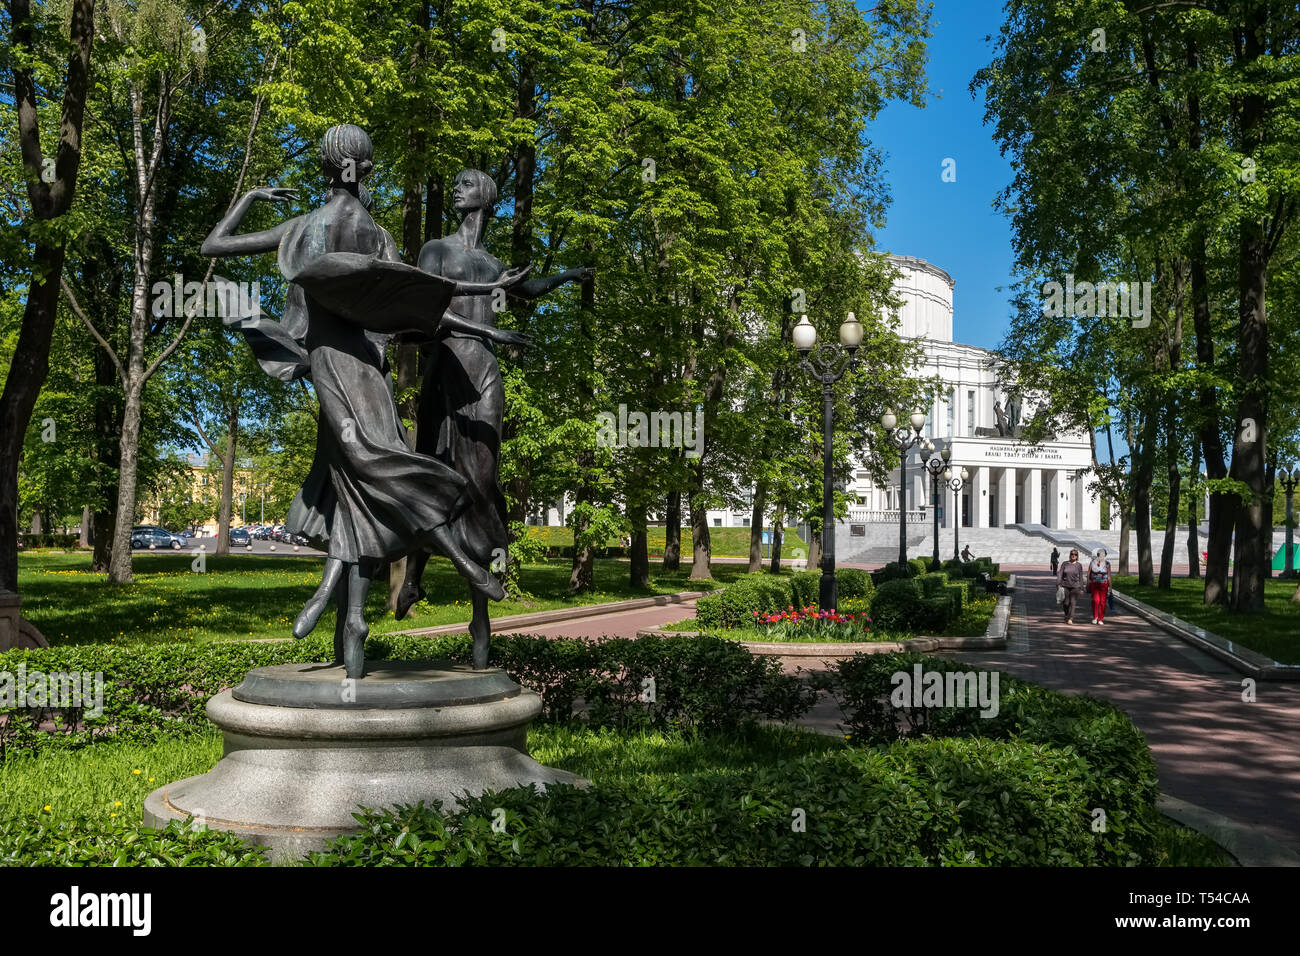 Minsk, Belarus - 7 mai 2018 : le théâtre de ballet et d'Opéra National du Bélarus à Minsk. Magnifique parc de sculptures près du bâtiment du théâtre Banque D'Images